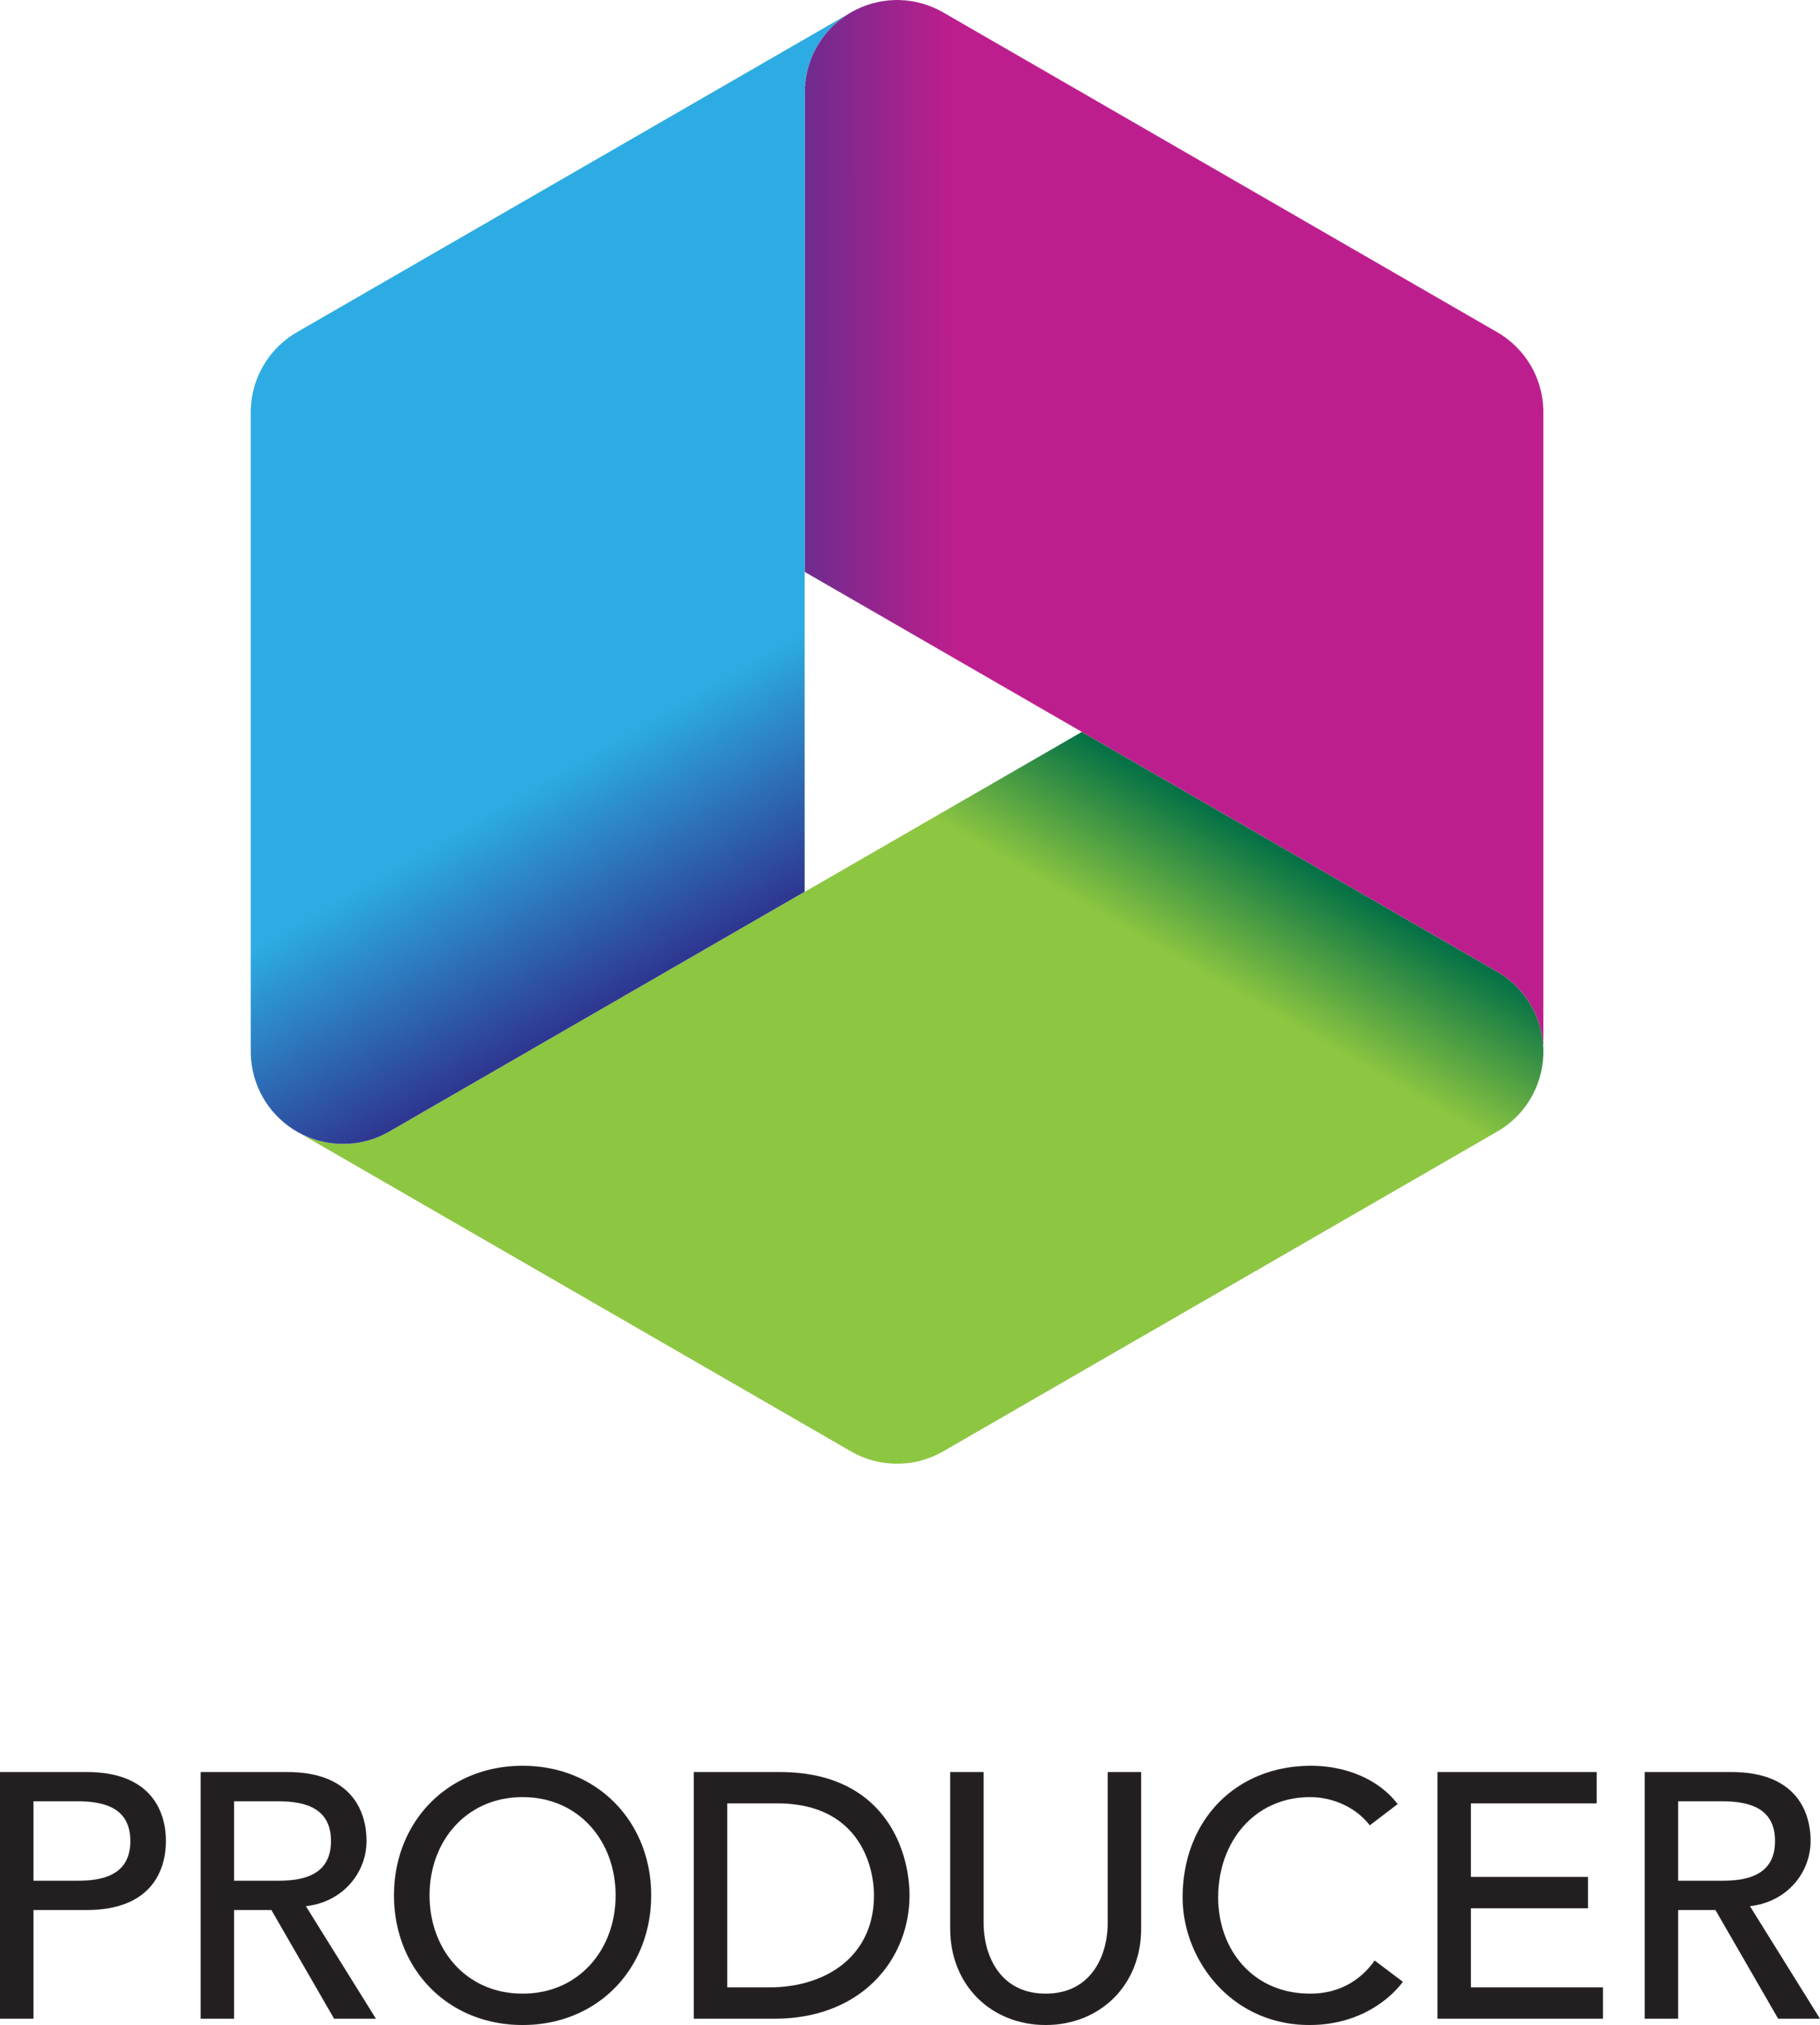 Vimtrek Logo producer